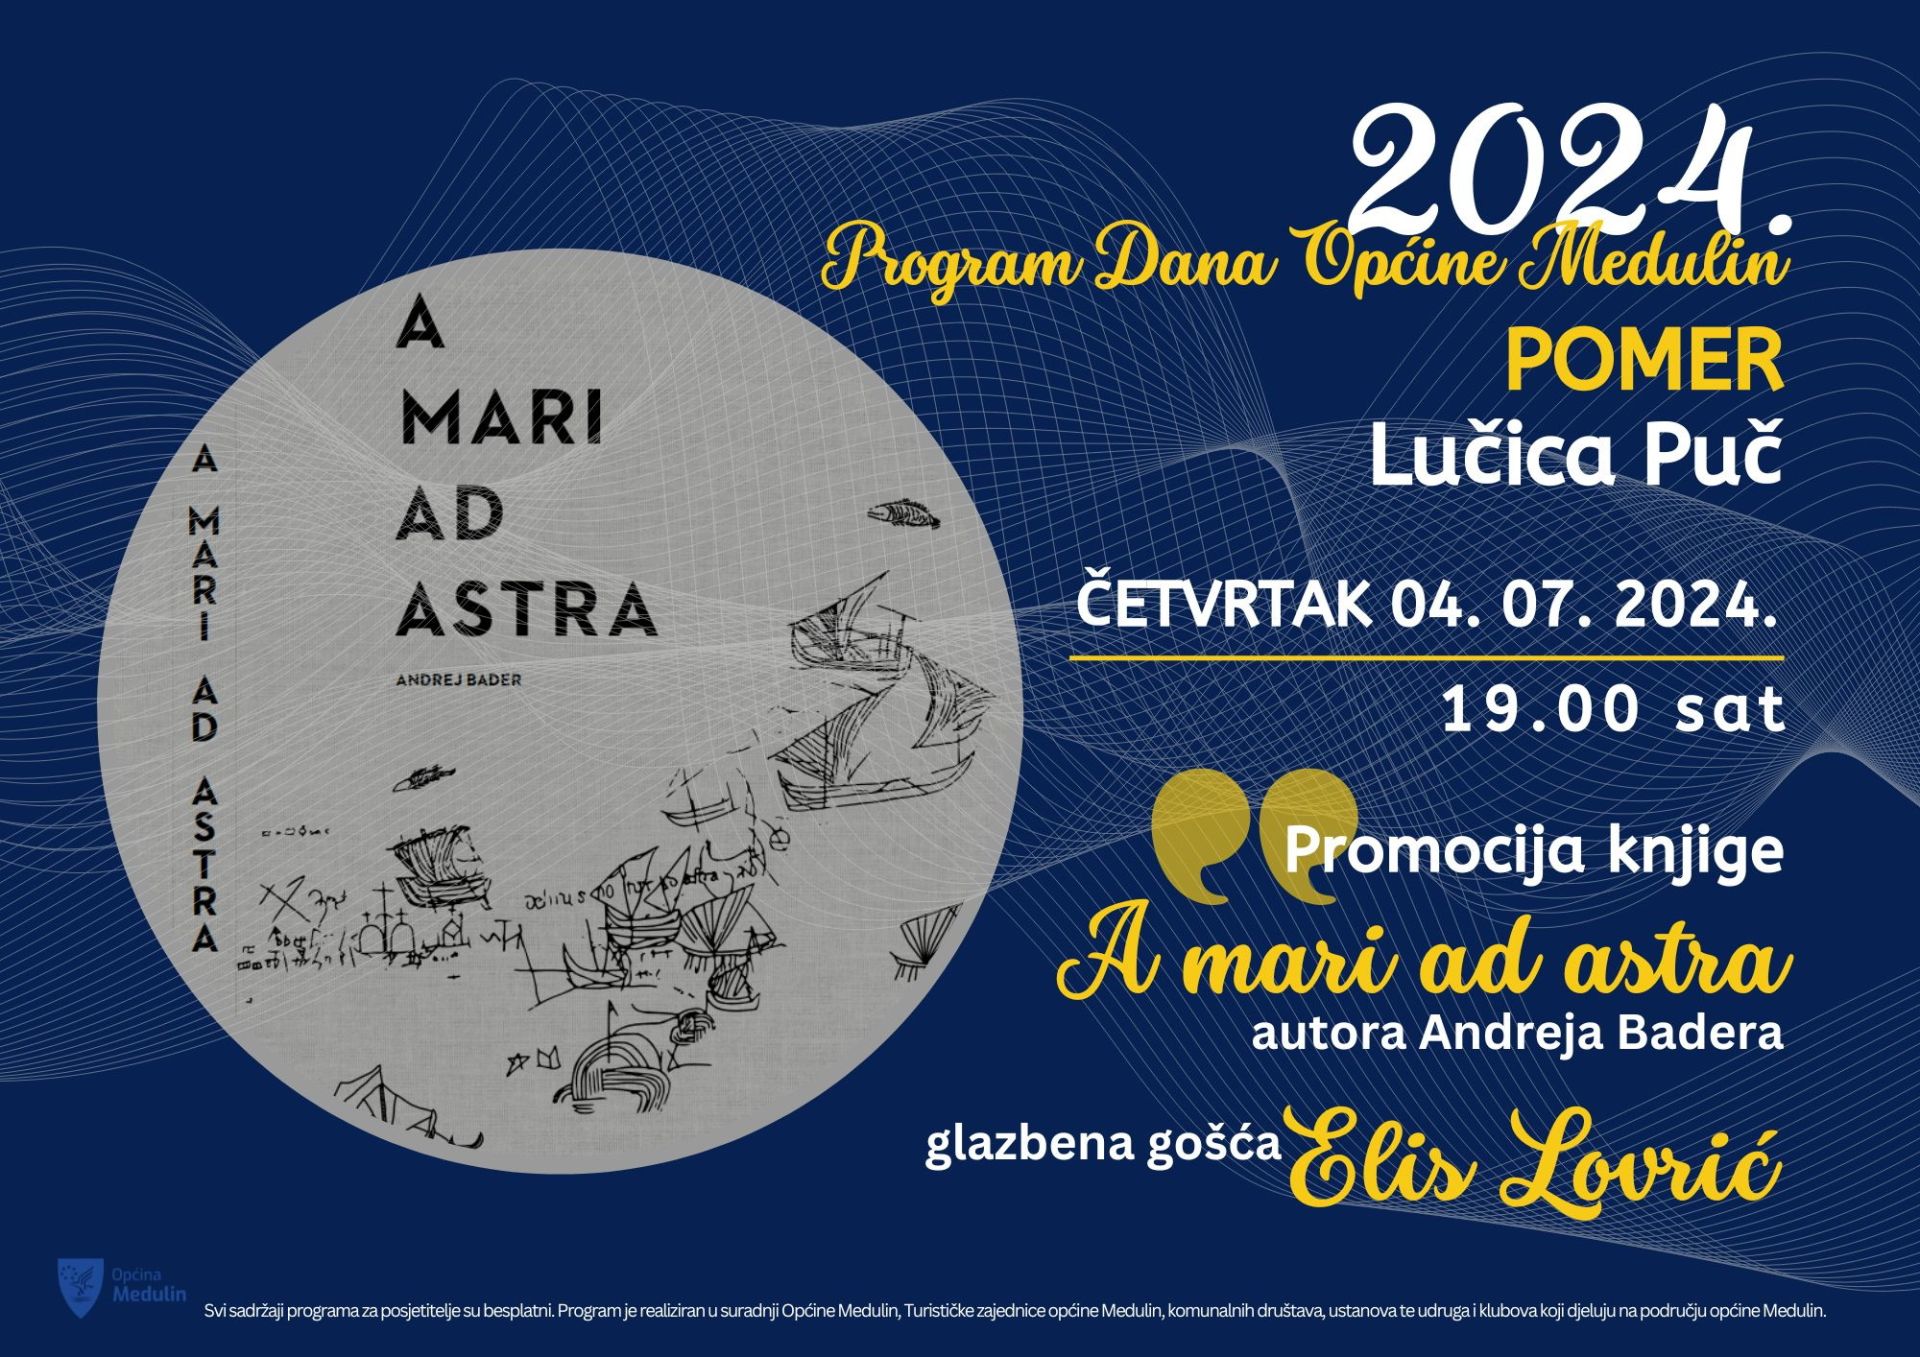 Promocija knjige „A mari ad astra“ autora Andreja Badera, četvrtak, 04. 07. 2024., 19 sati, Pomer
